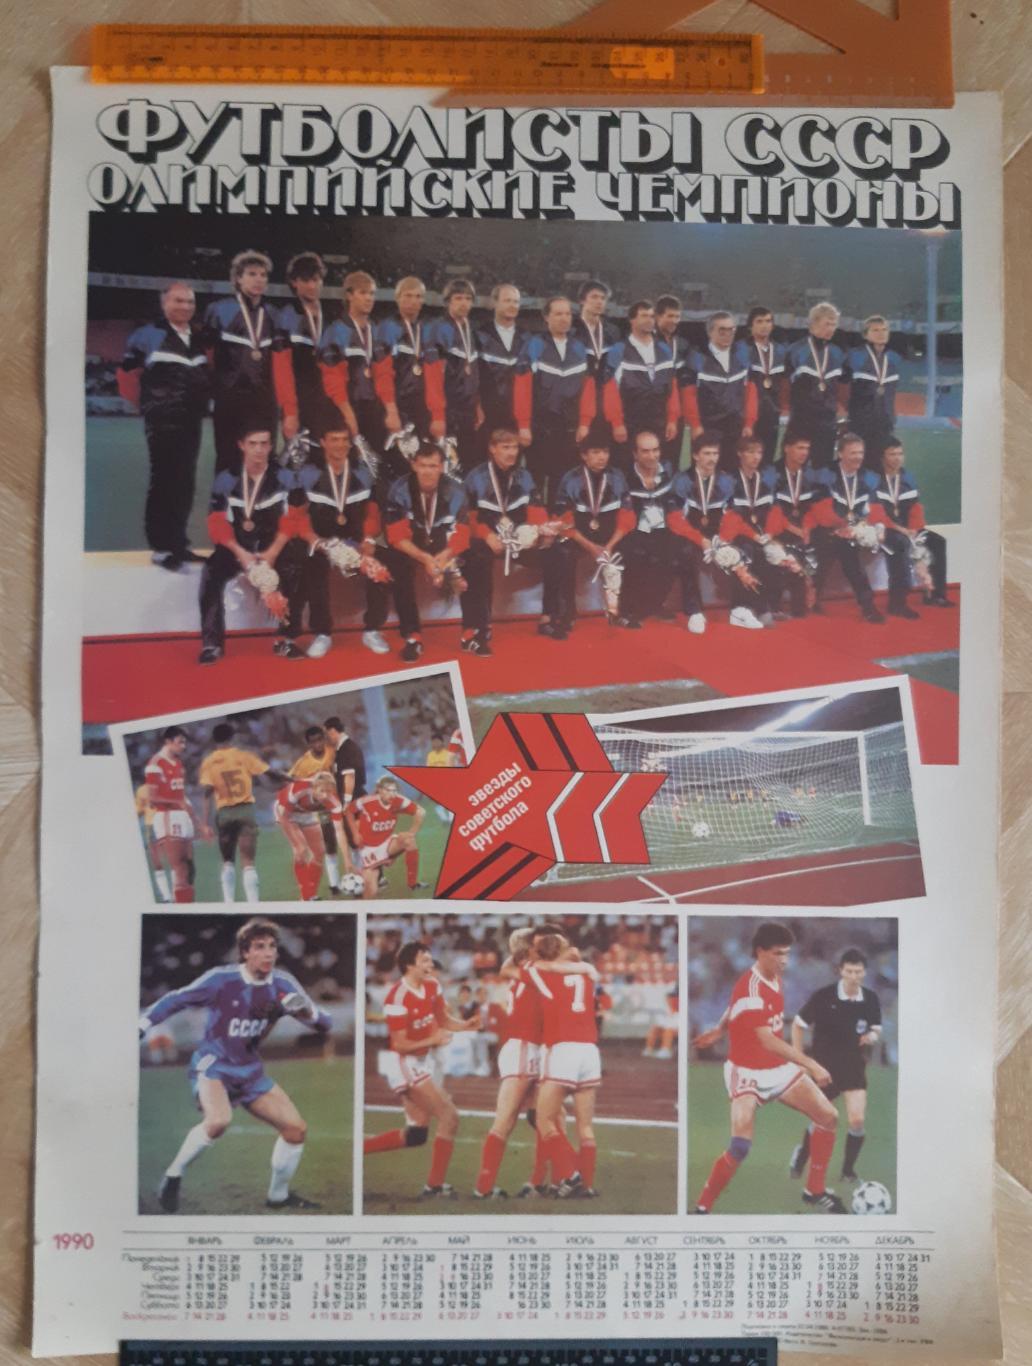 Постер сборная СССР олимпийский чемпион 1988 года. 1